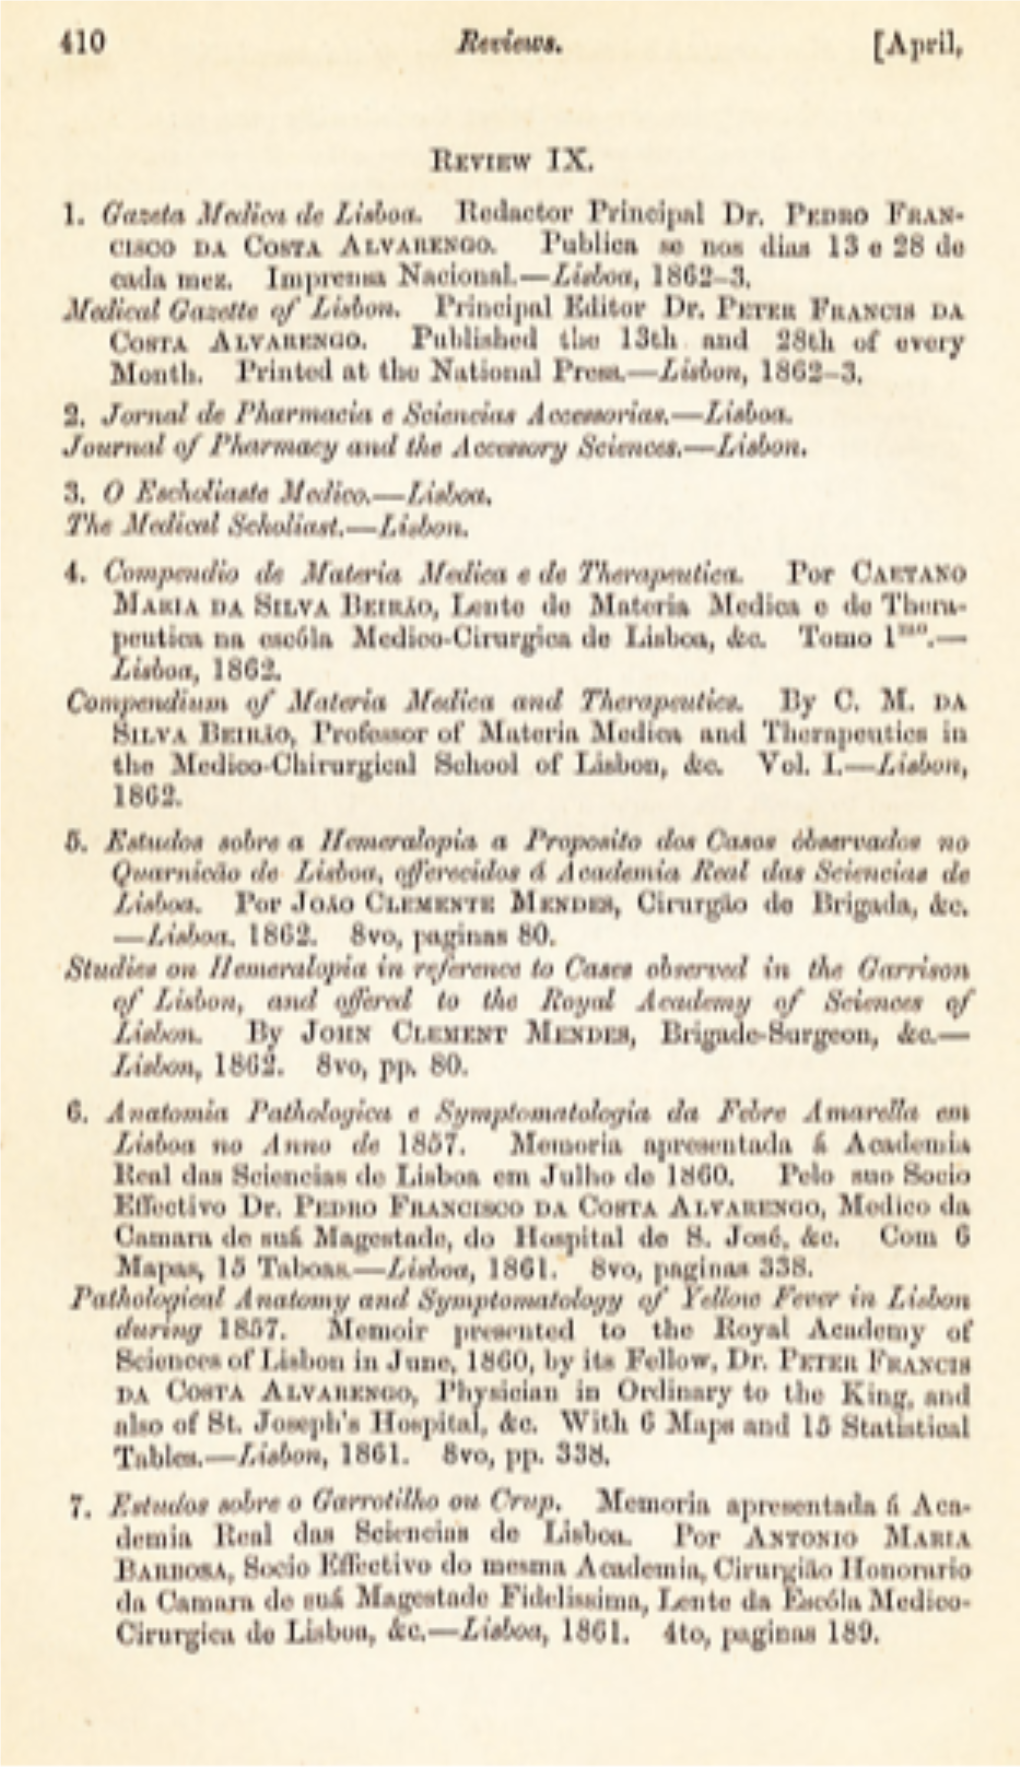 Medical Gazette of Lisbon